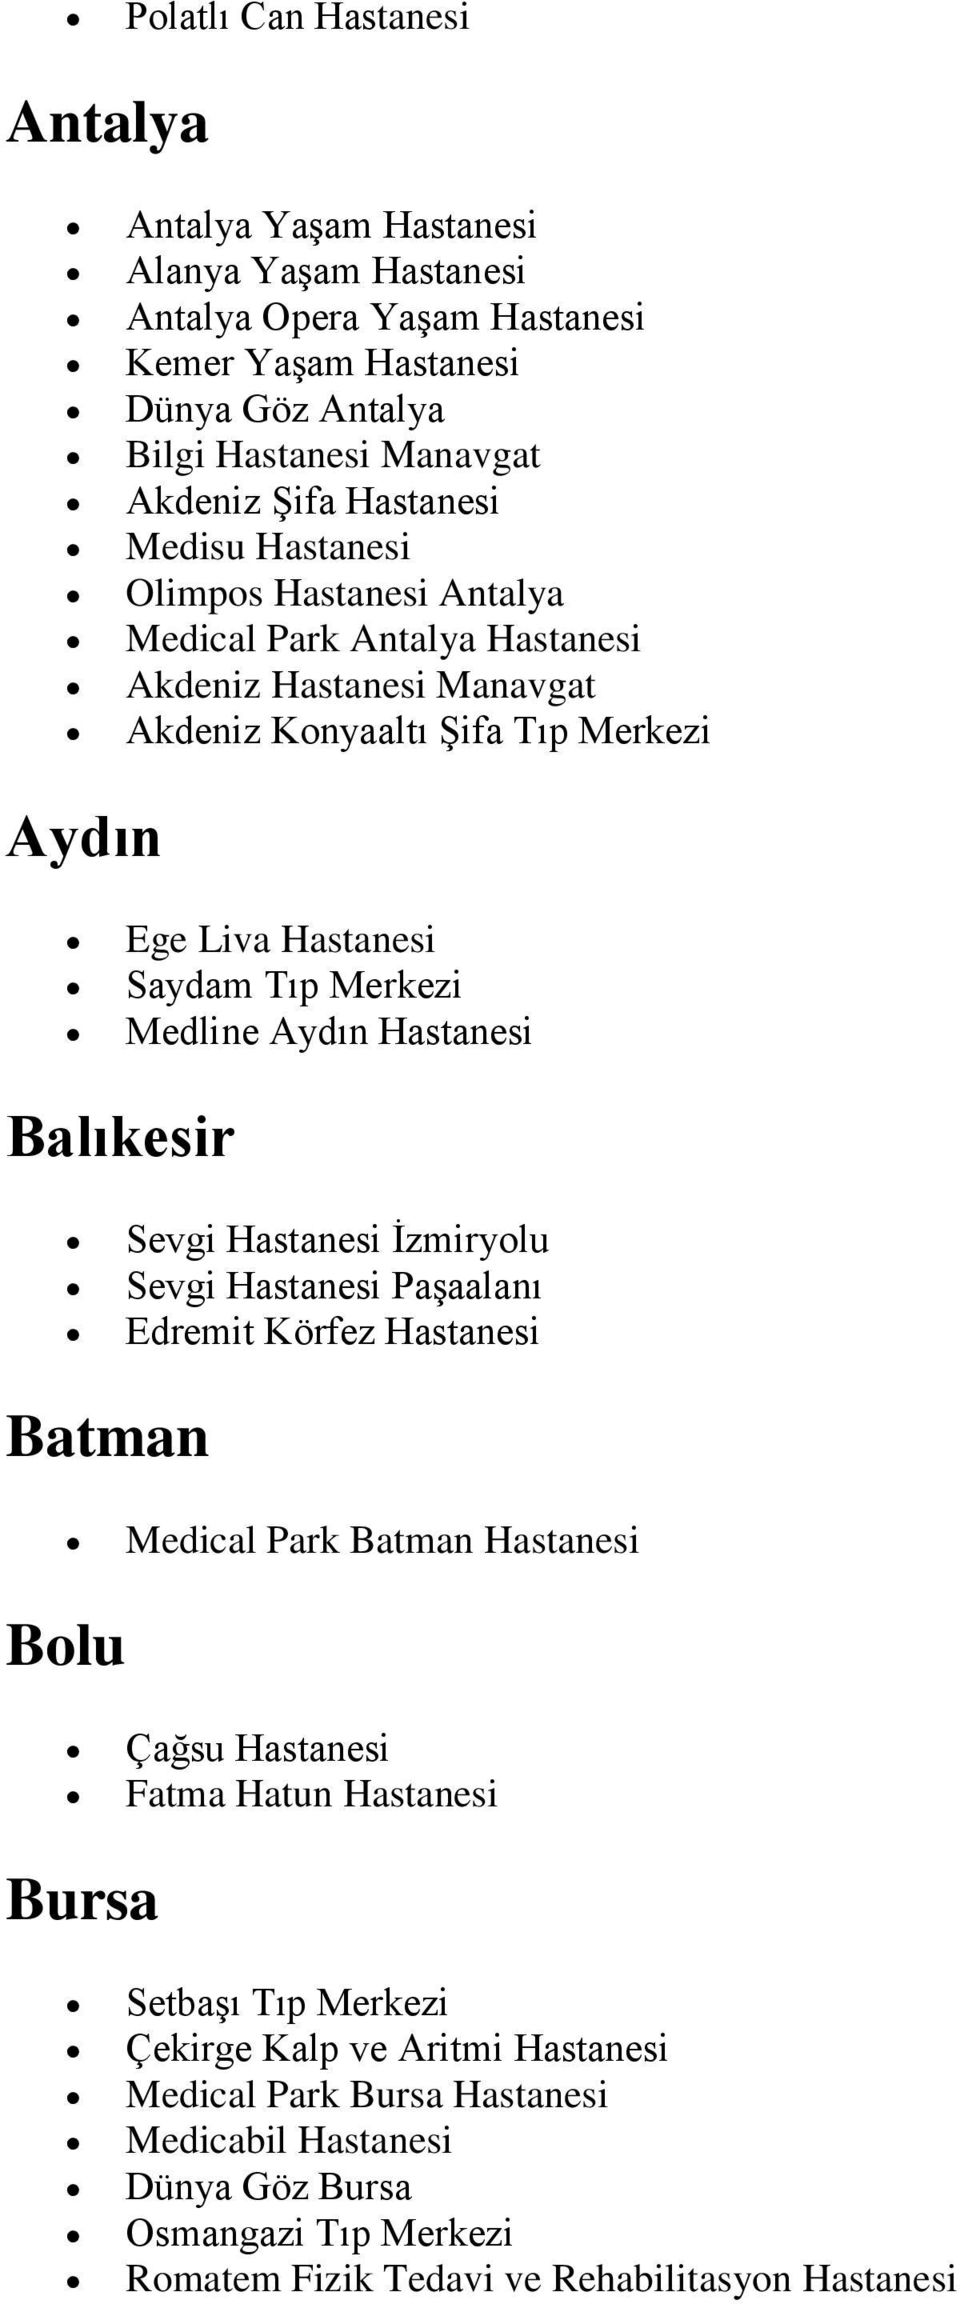 Medline Aydın Hastanesi Balıkesir Sevgi Hastanesi İzmiryolu Sevgi Hastanesi Paşaalanı Edremit Körfez Hastanesi Batman Medical Park Batman Hastanesi Bolu Çağsu Hastanesi Fatma Hatun